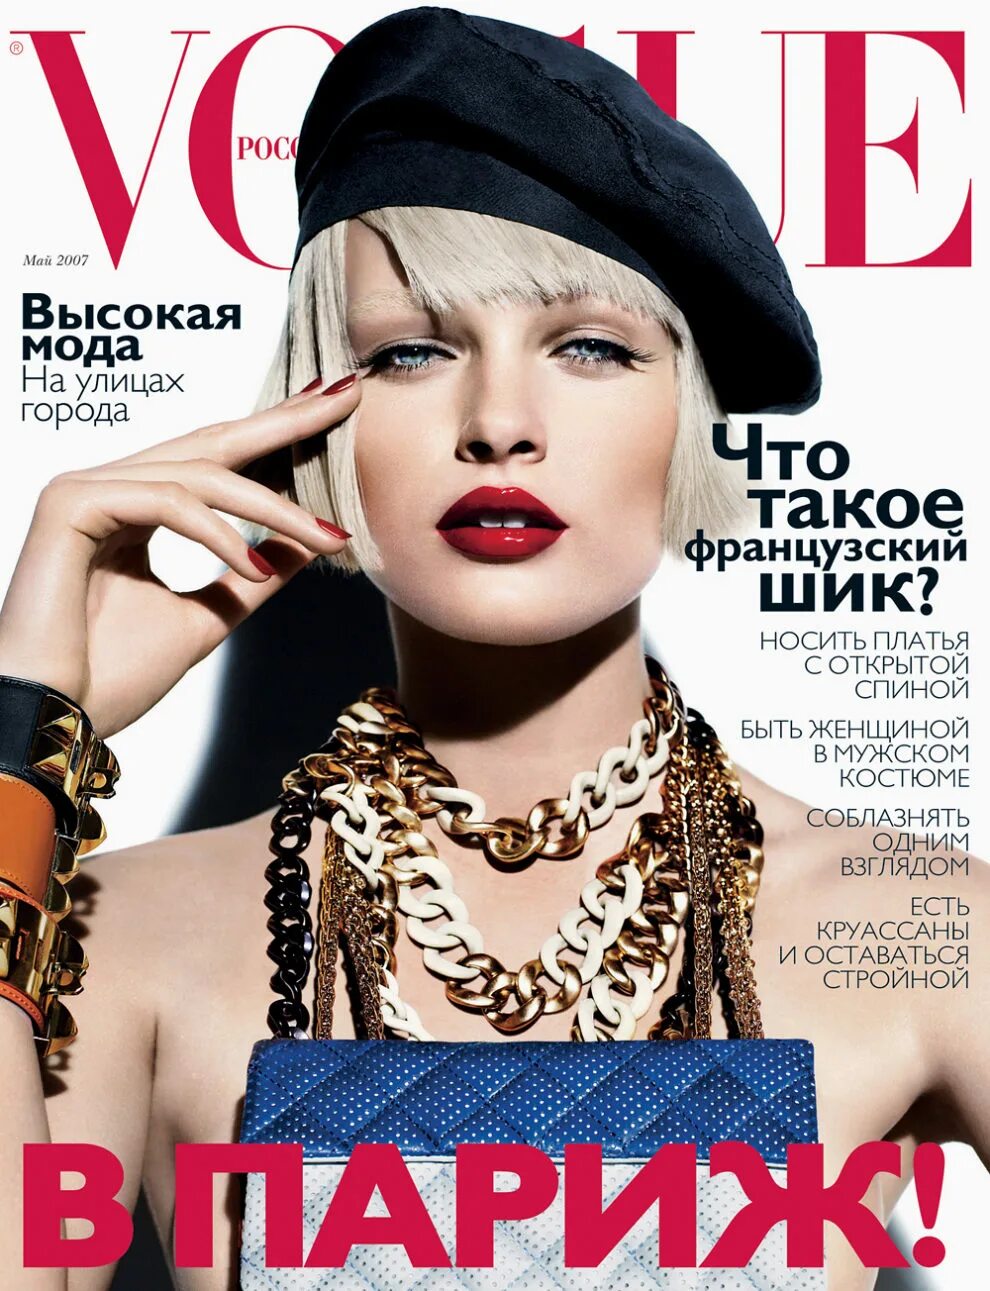 Обложки модных журналов Вог. Обложка журнала Vogue. Журнал мод. Самая модная обложка журнала.